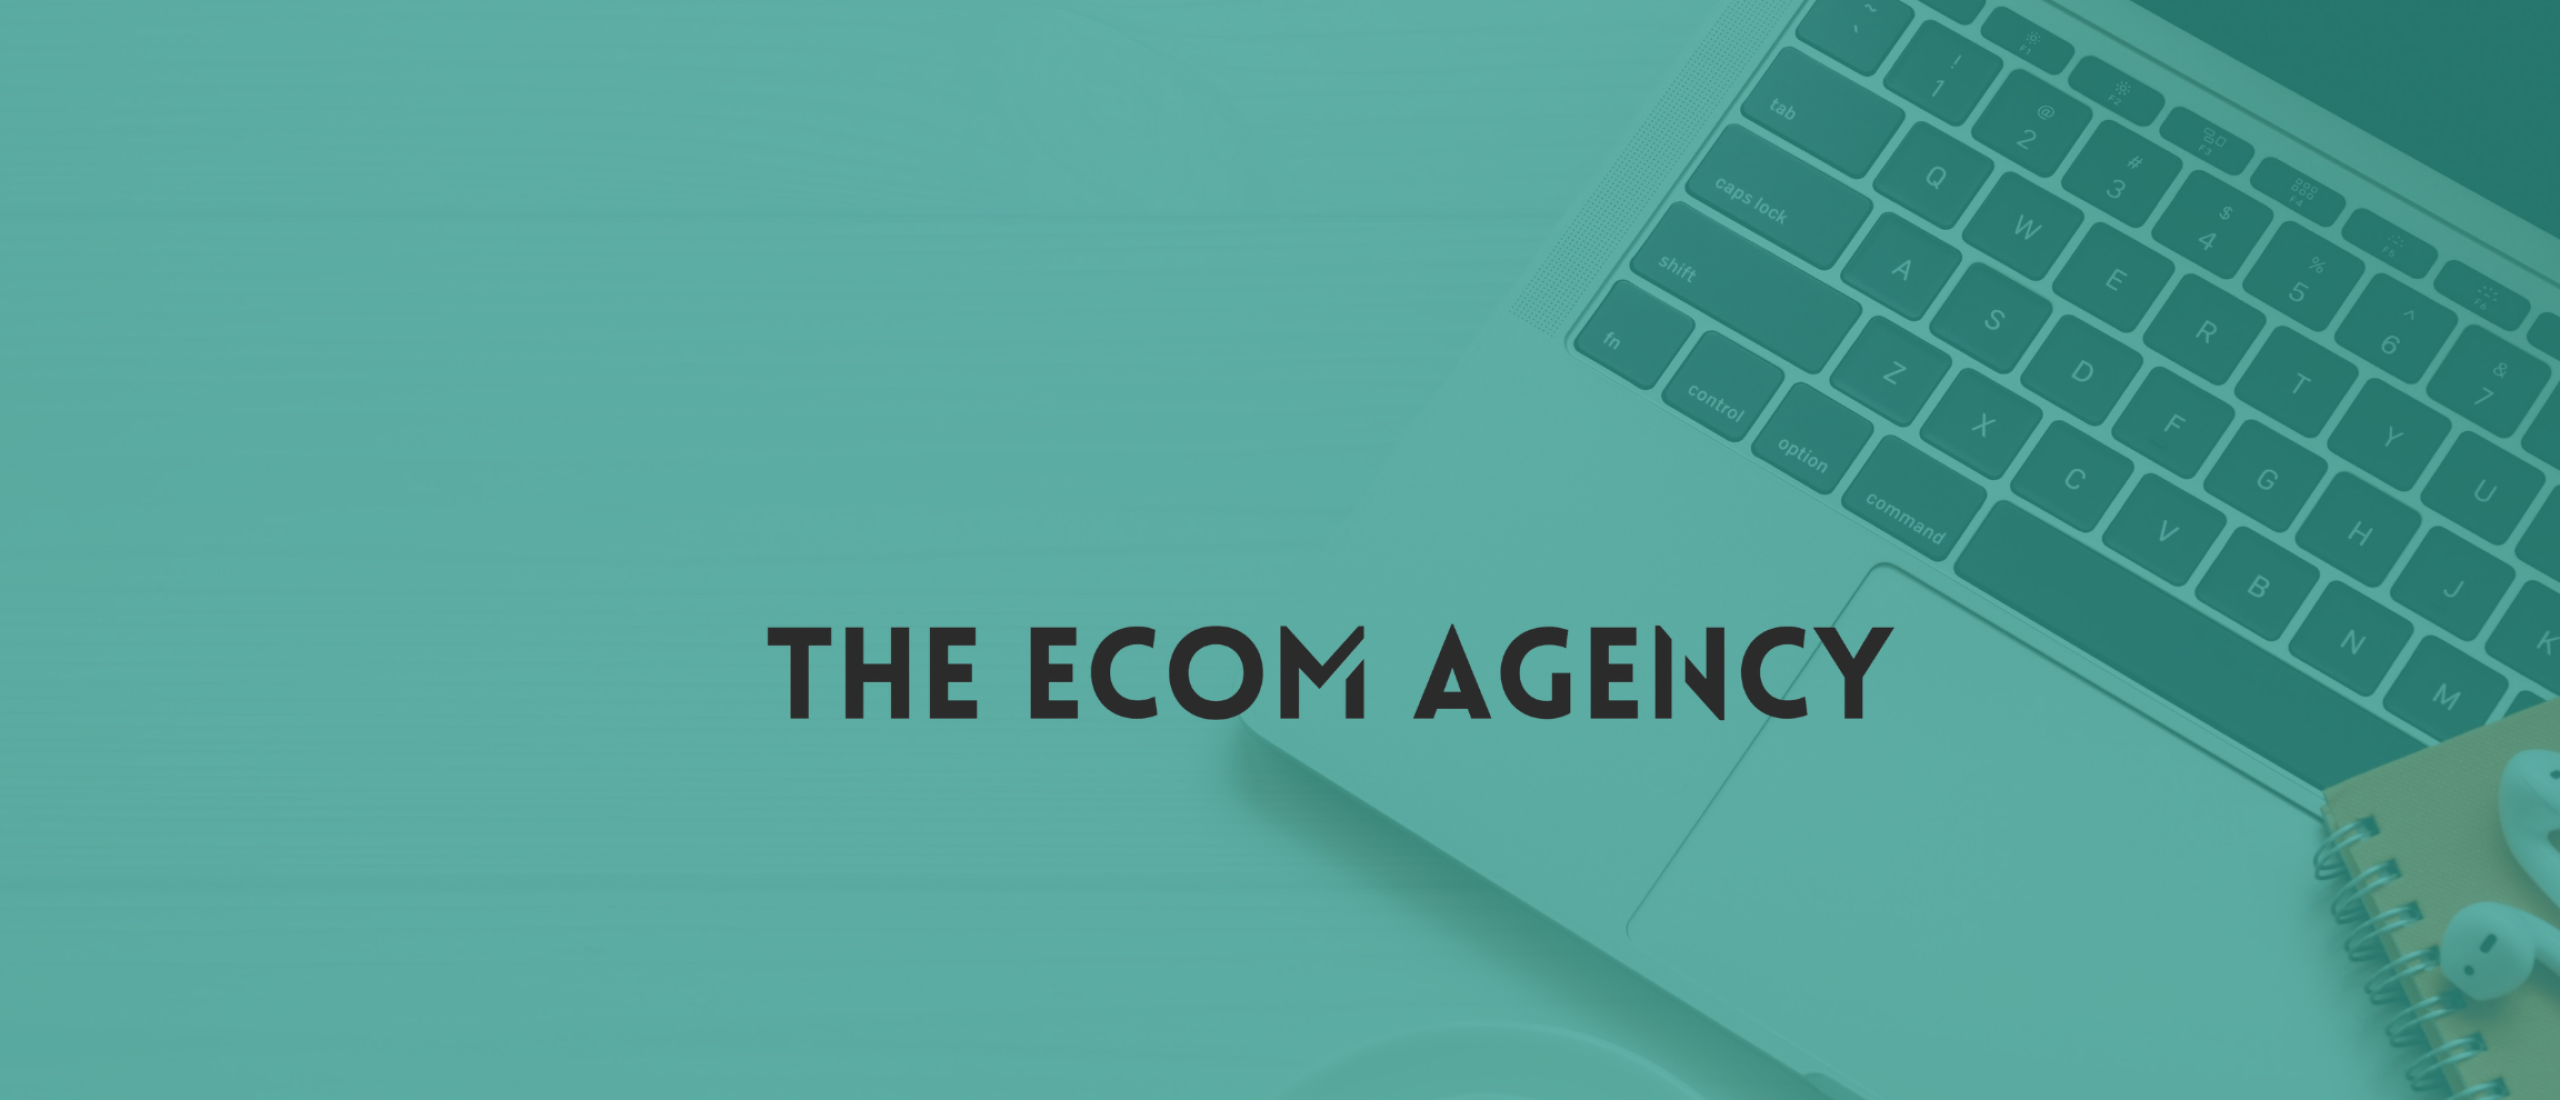 The Ecom Agency blog